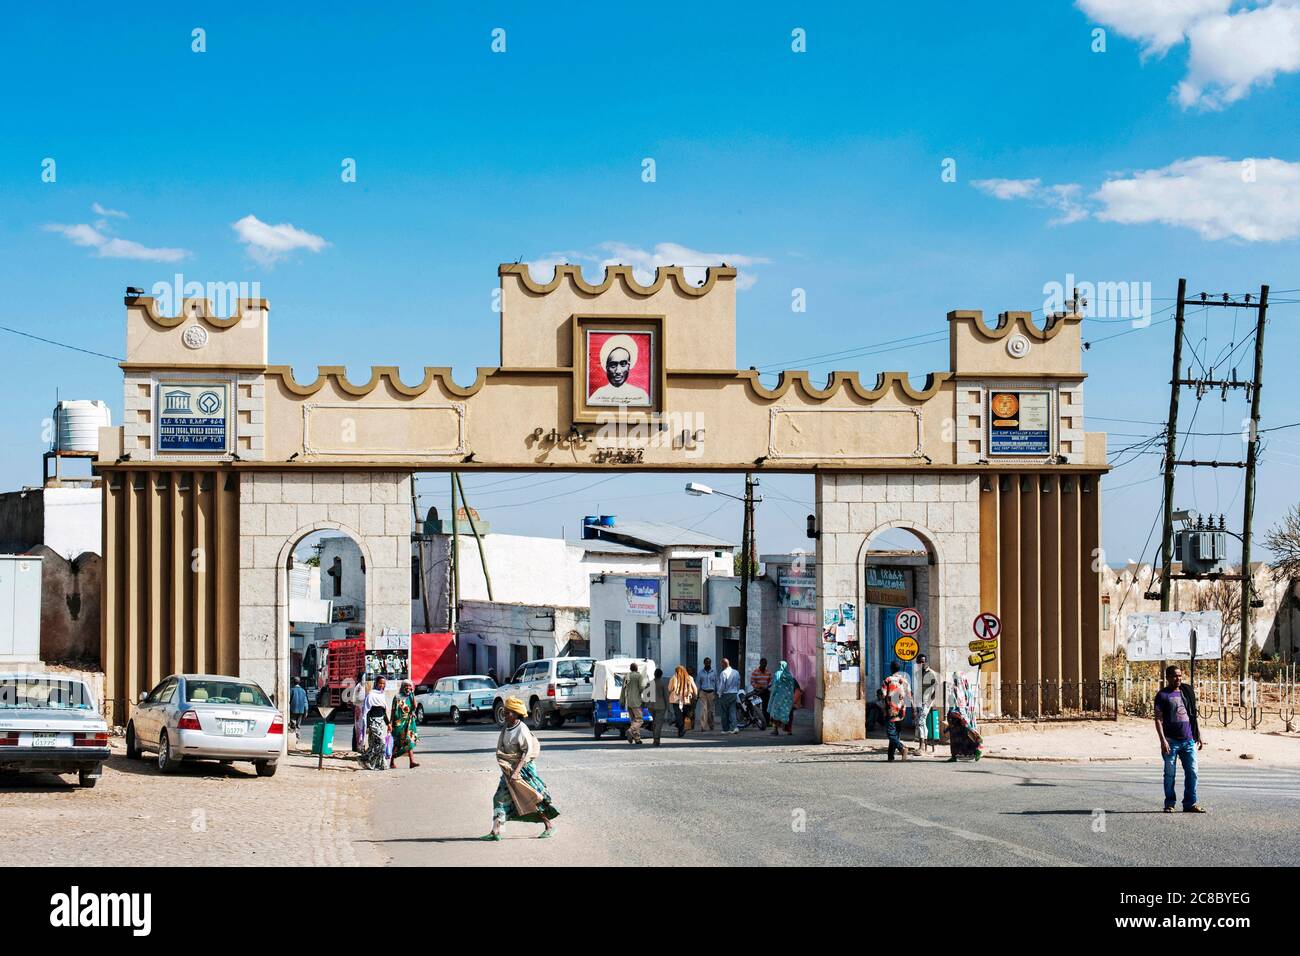 Hara - Etiopia - Africa. 27 dicembre 2012. Foto della porta Harar, l'ingresso principale di sei porte della città vecchia che prende il nome dalla città Foto Stock